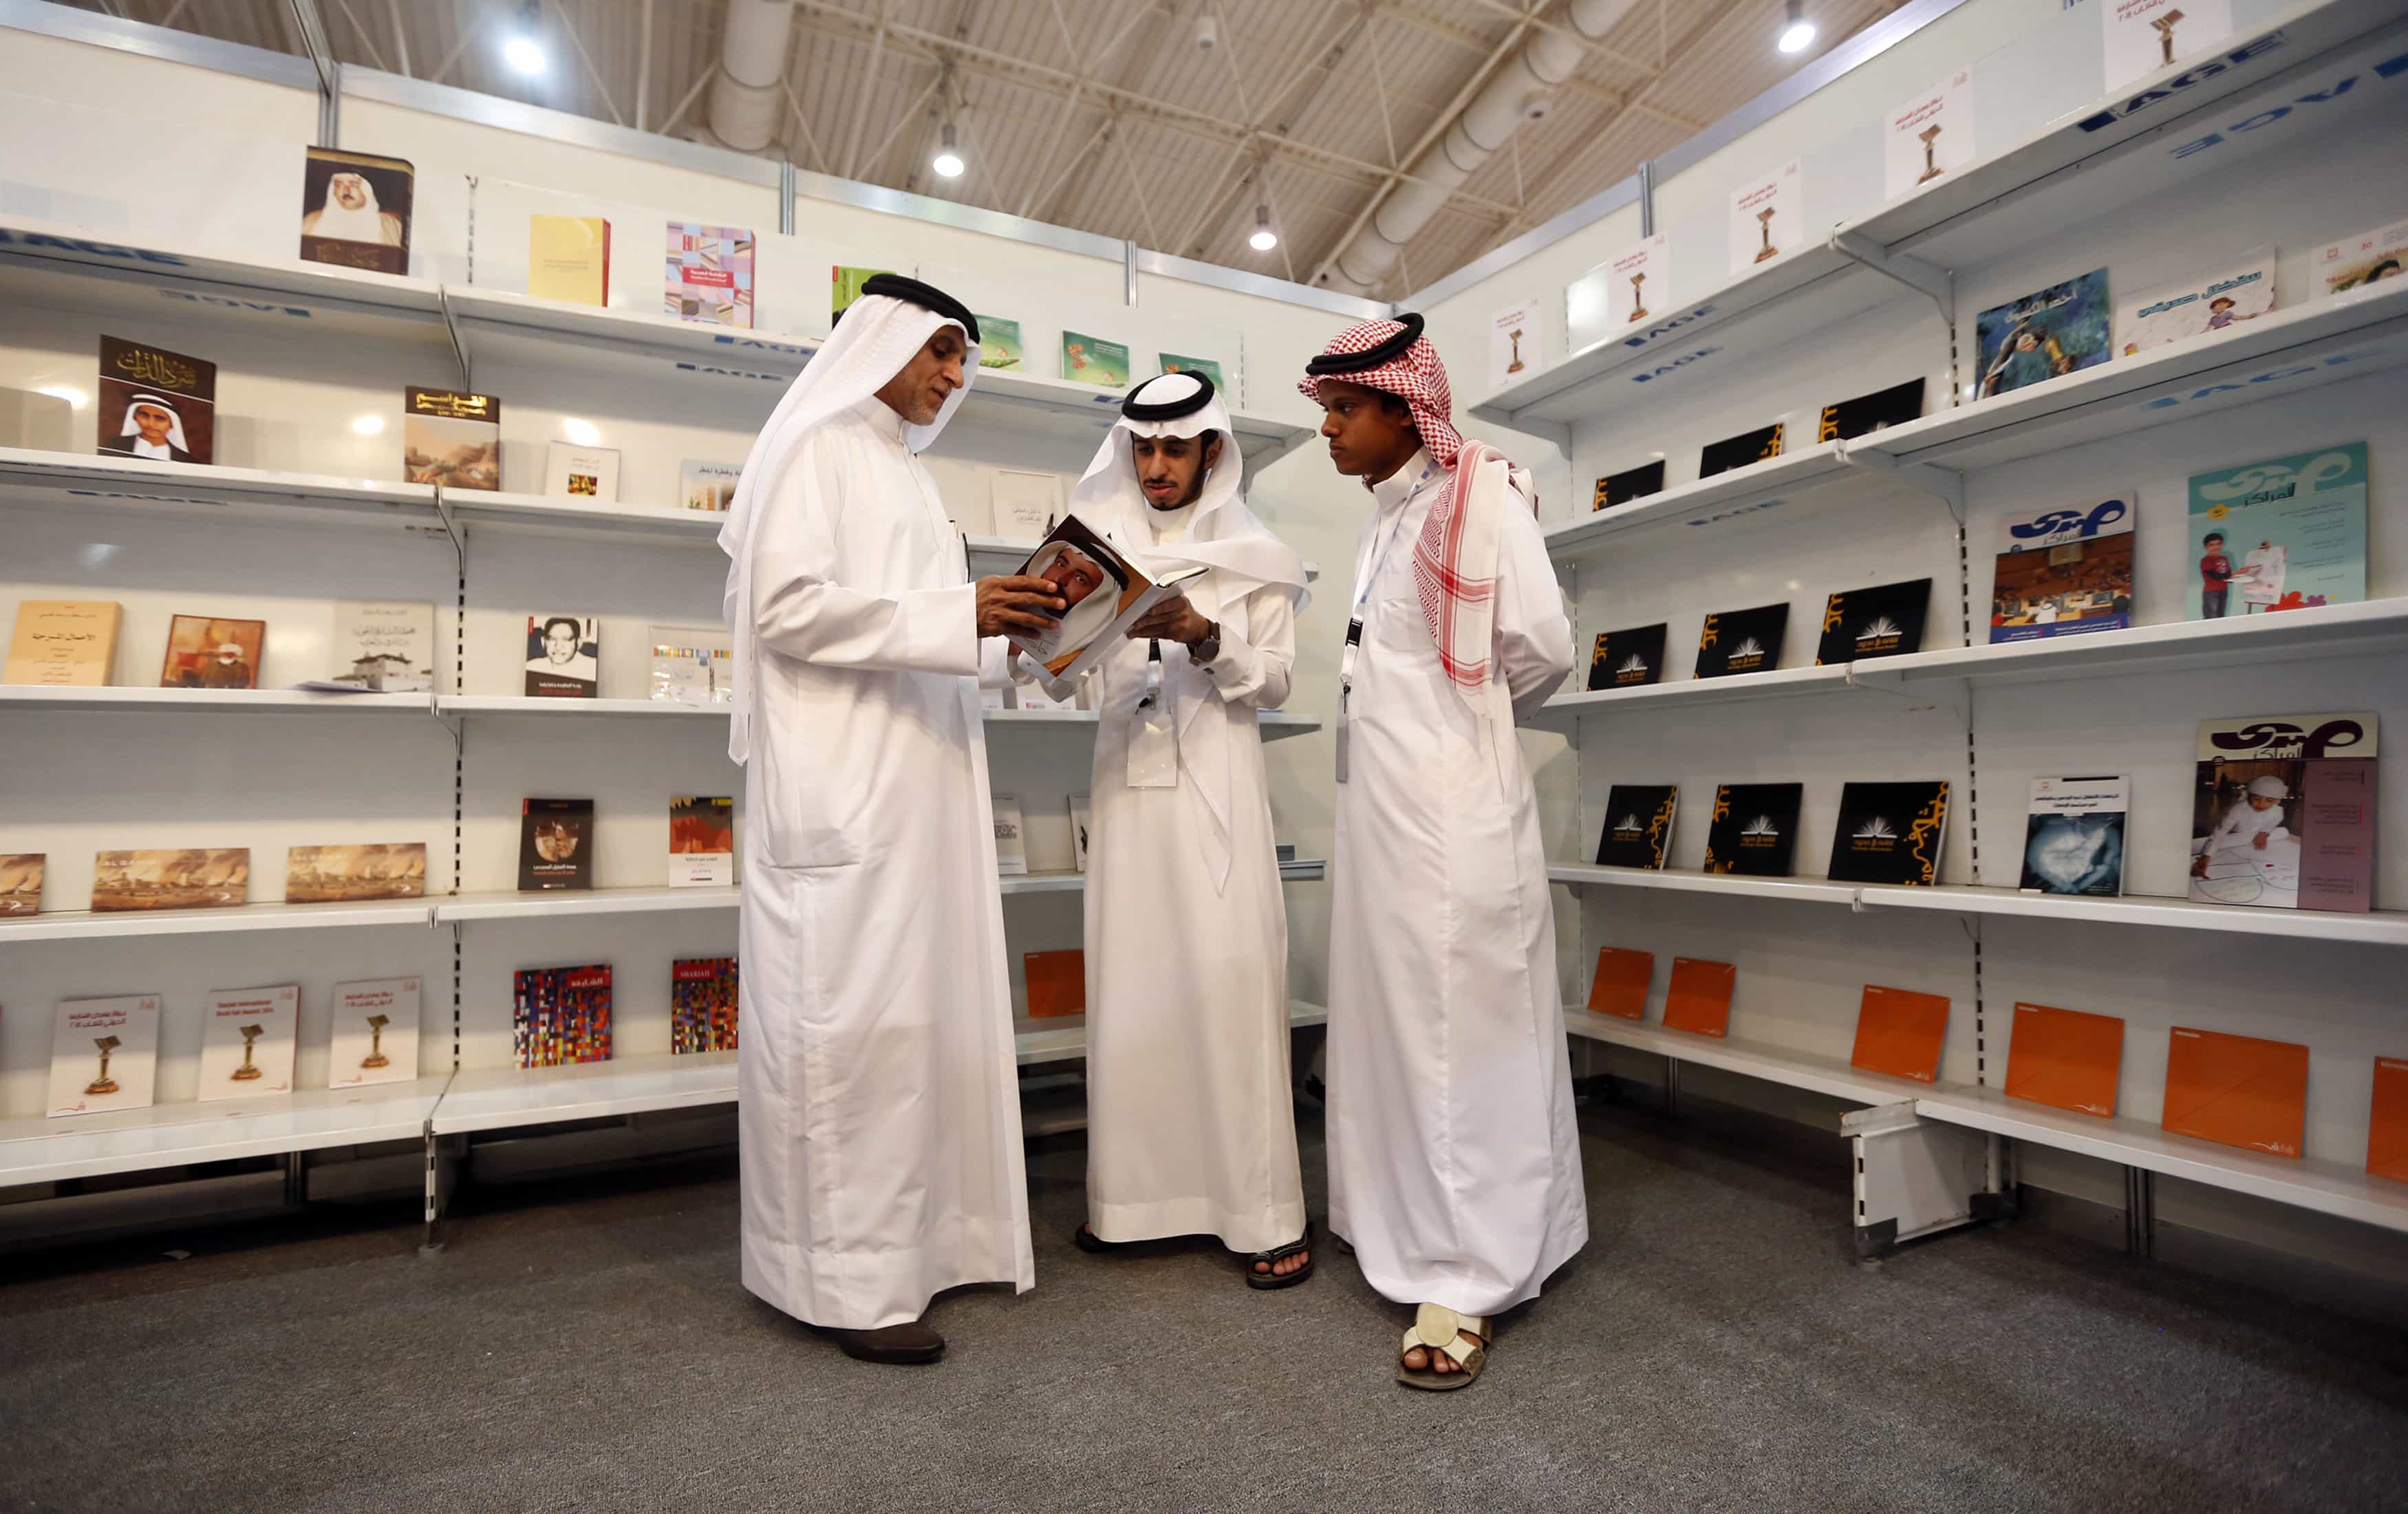 Men examine a book during a book fair in Riyadh on 5 March 2014, REUTERS/Faisal Al Nasser